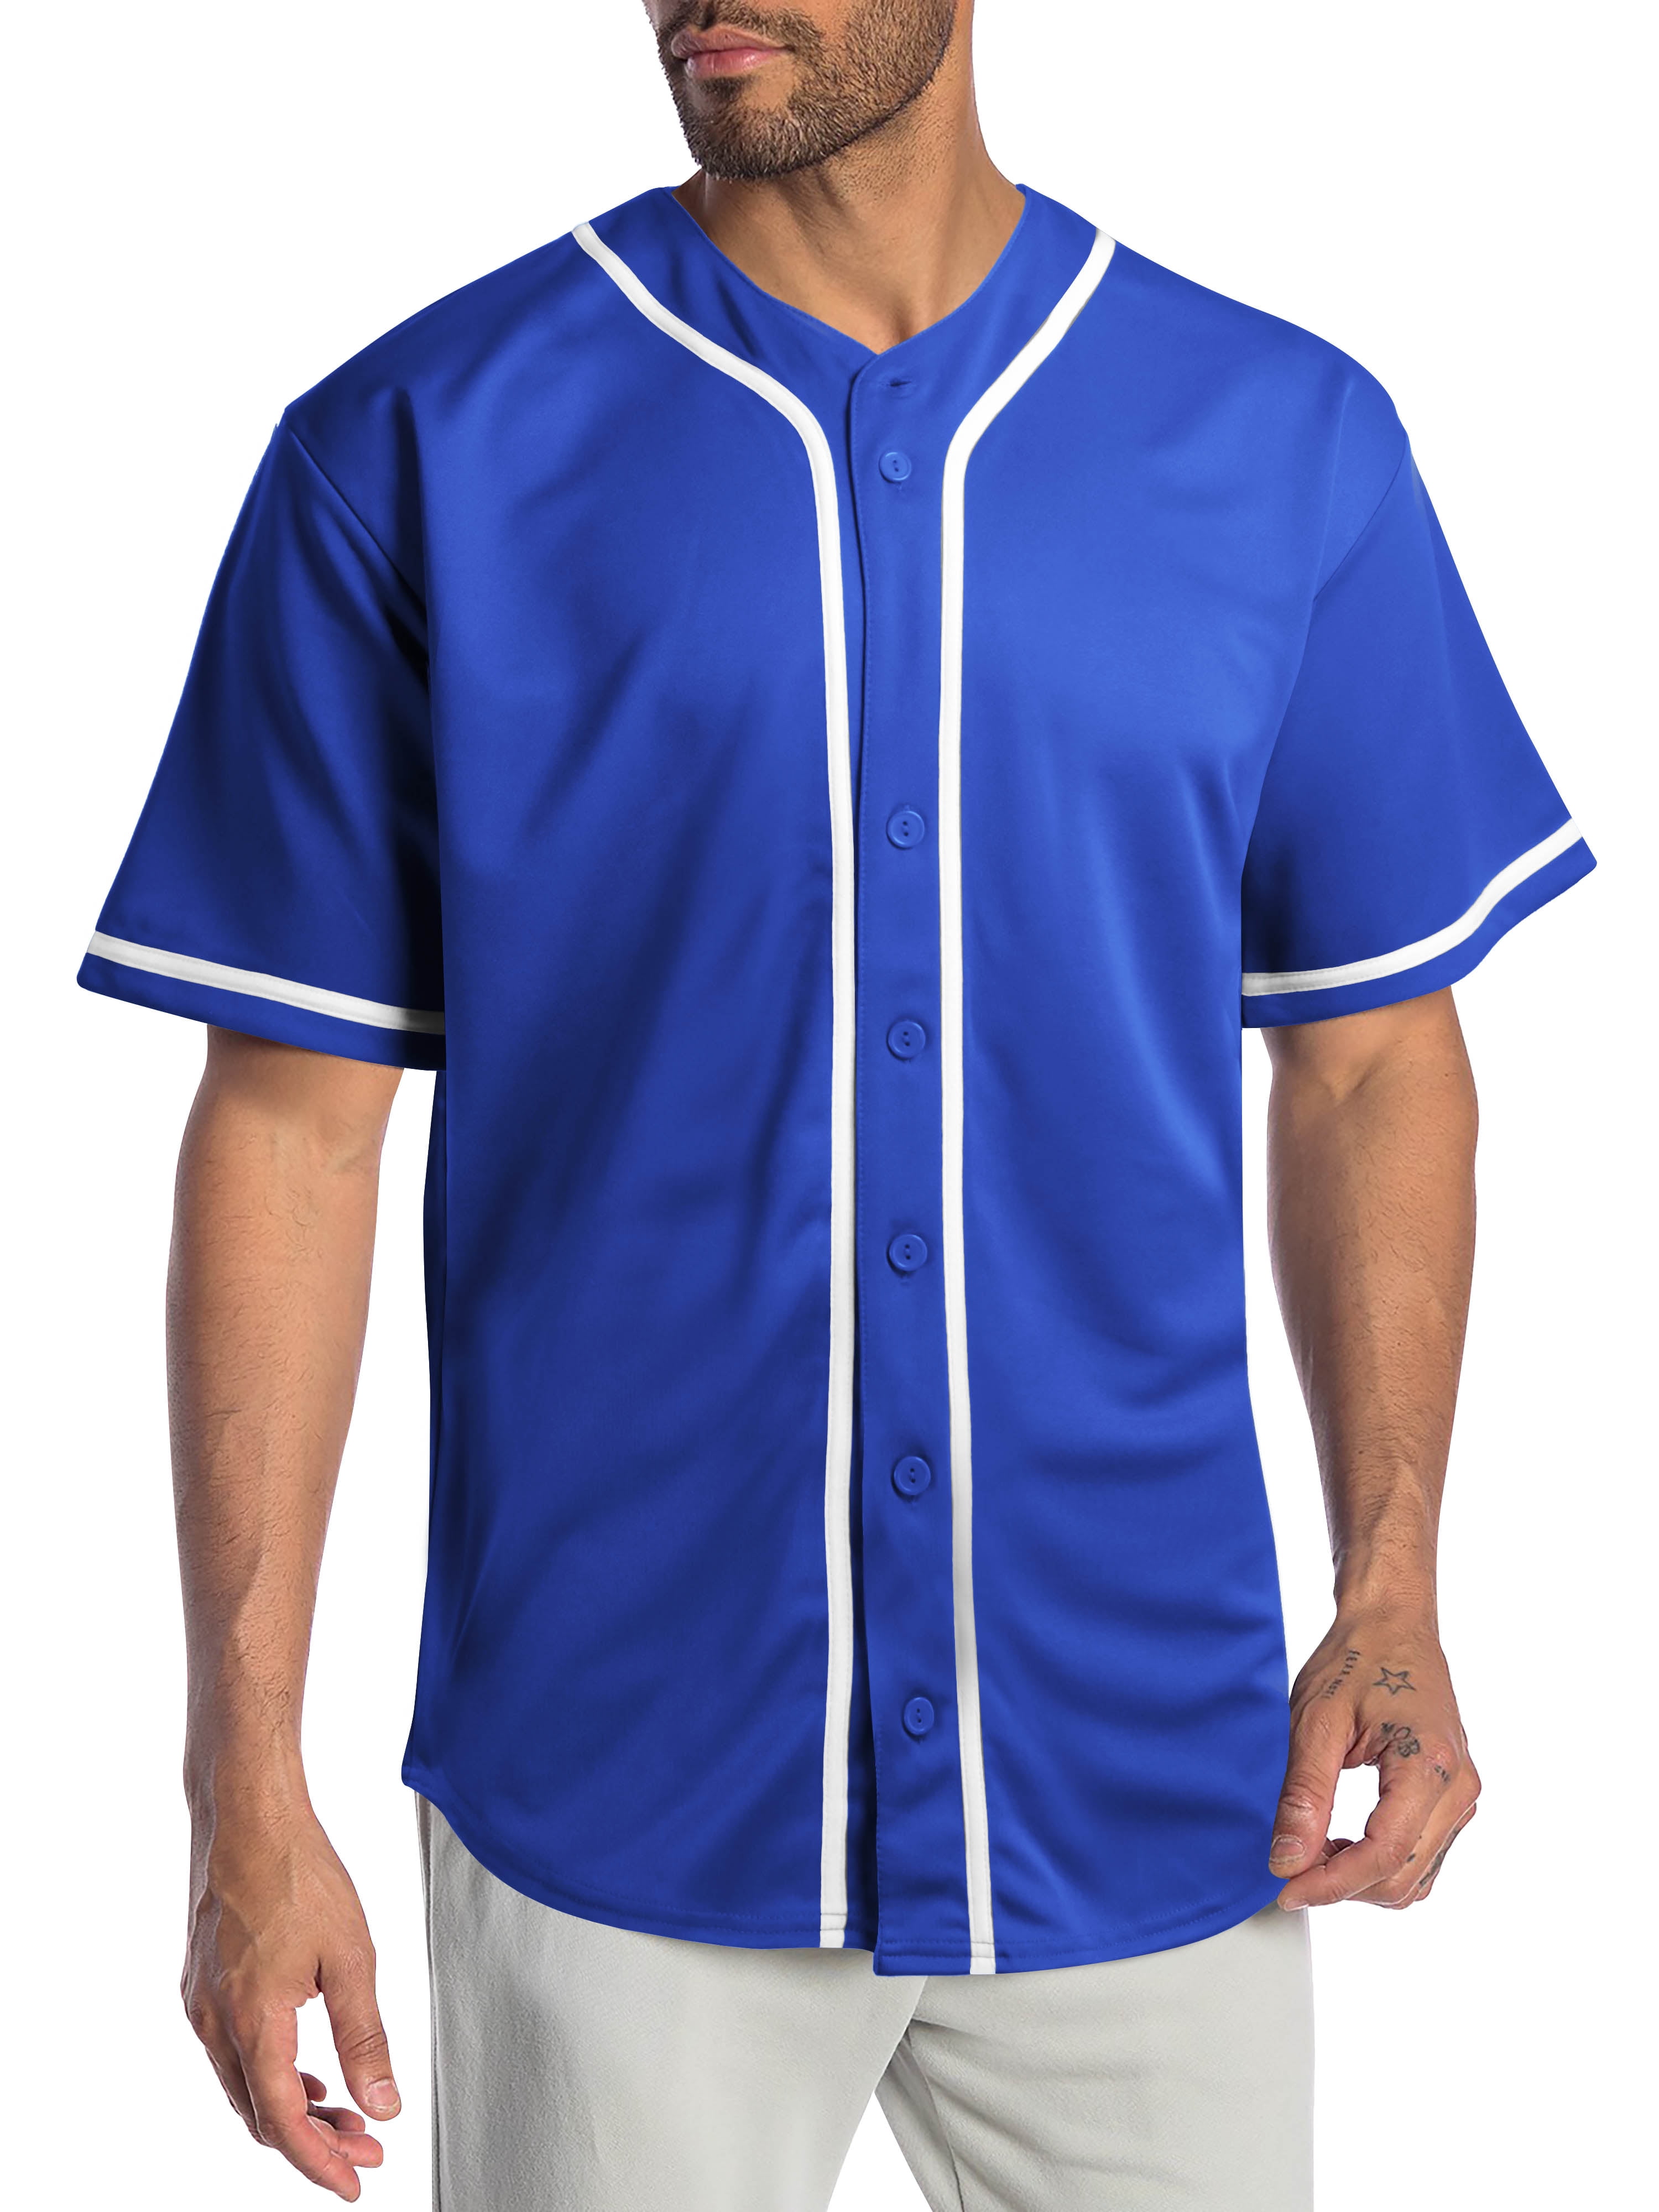 Бейсбольная футболка. Рубашка бейсбольная мужская. Бейсбольные майки на пуговицах. Футболка бейсбольная мужская. Бейсбольные футболки на пуговицах.